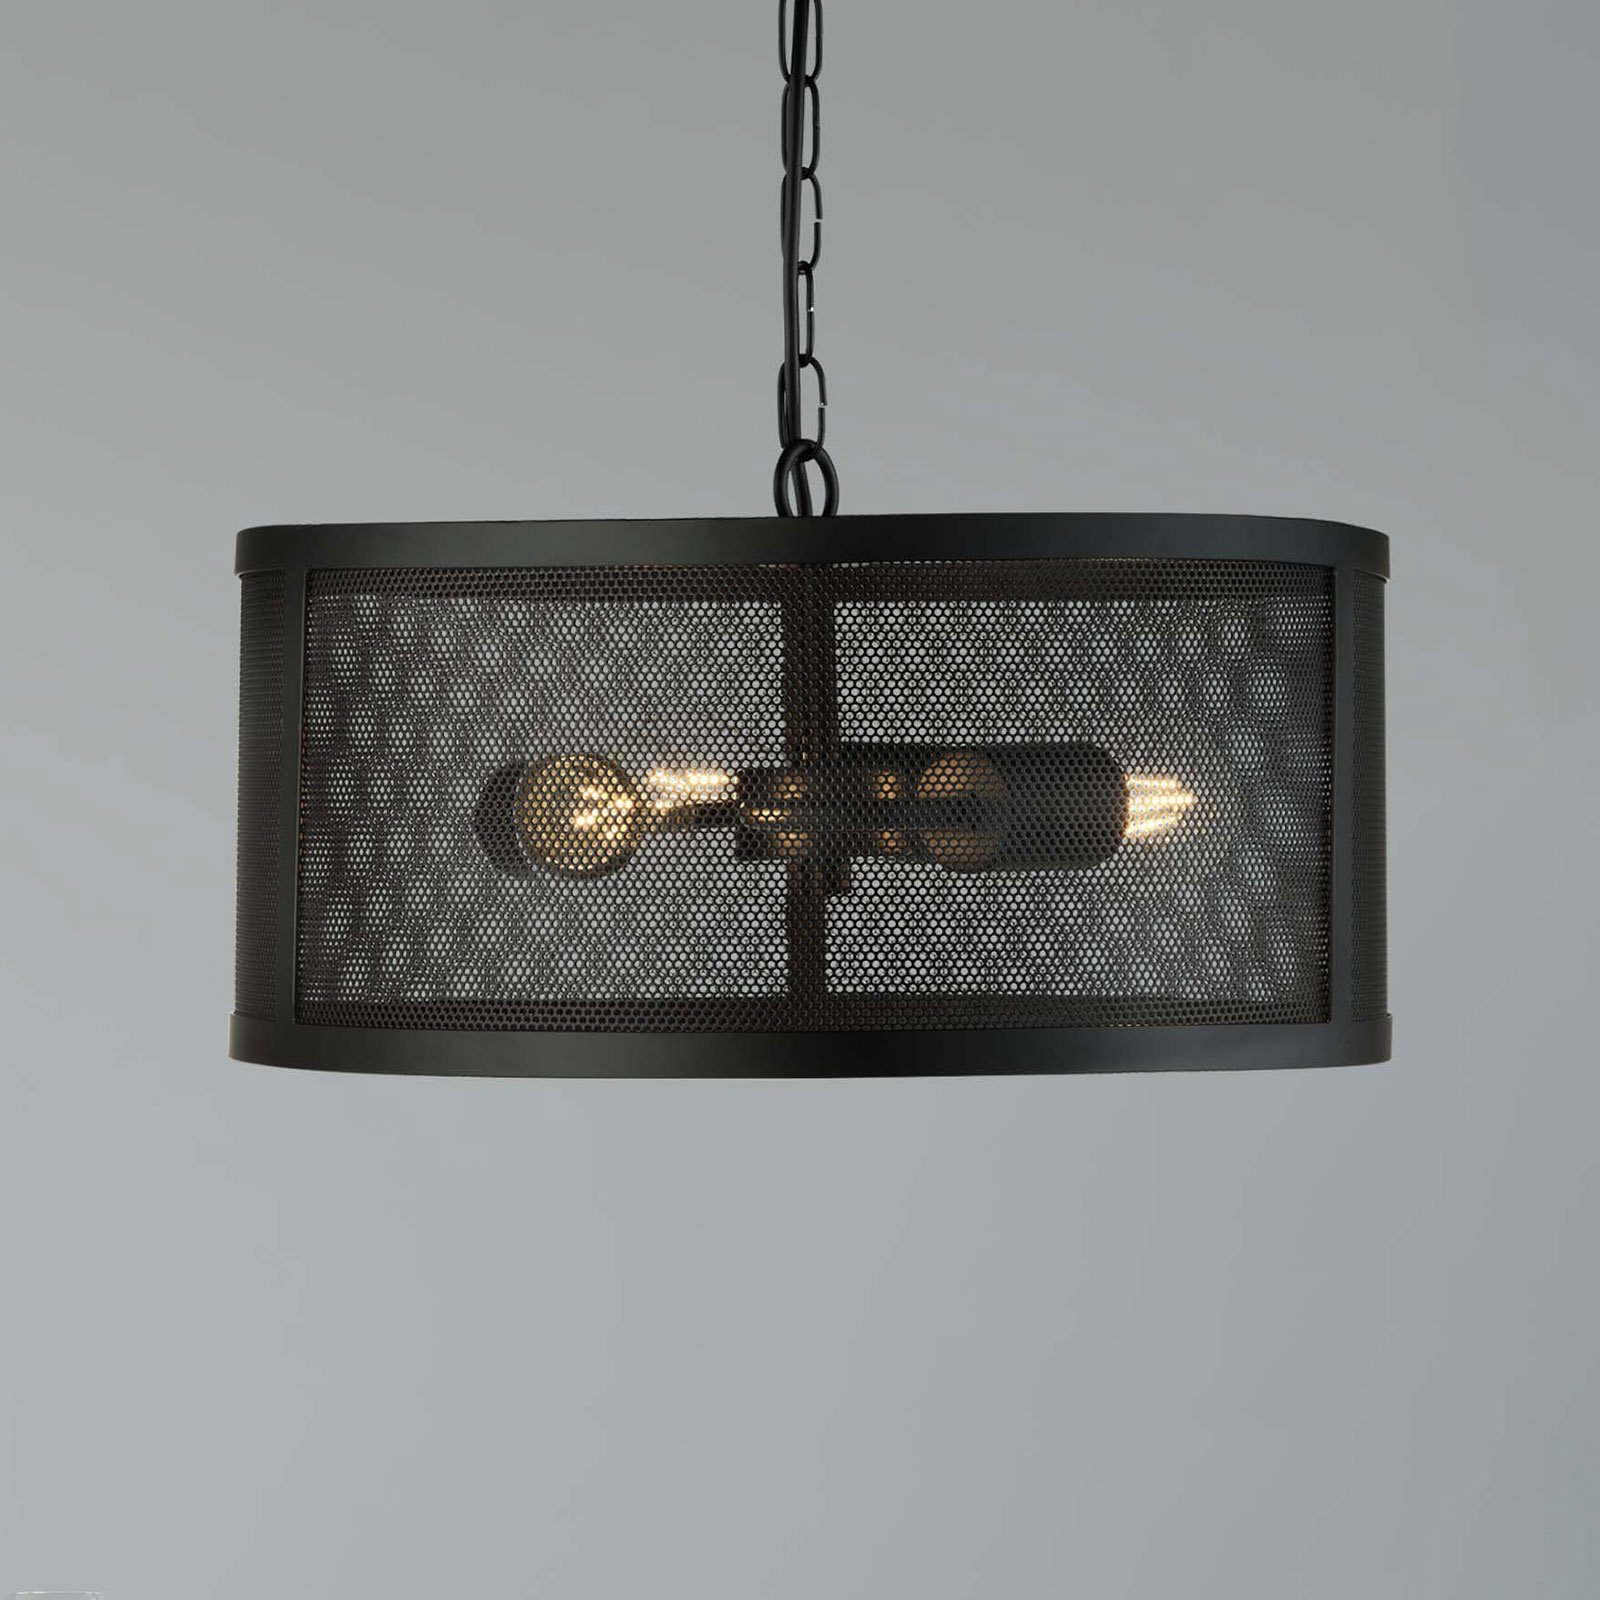 Fishnet hanging light made of metal, black Ø 45 cm